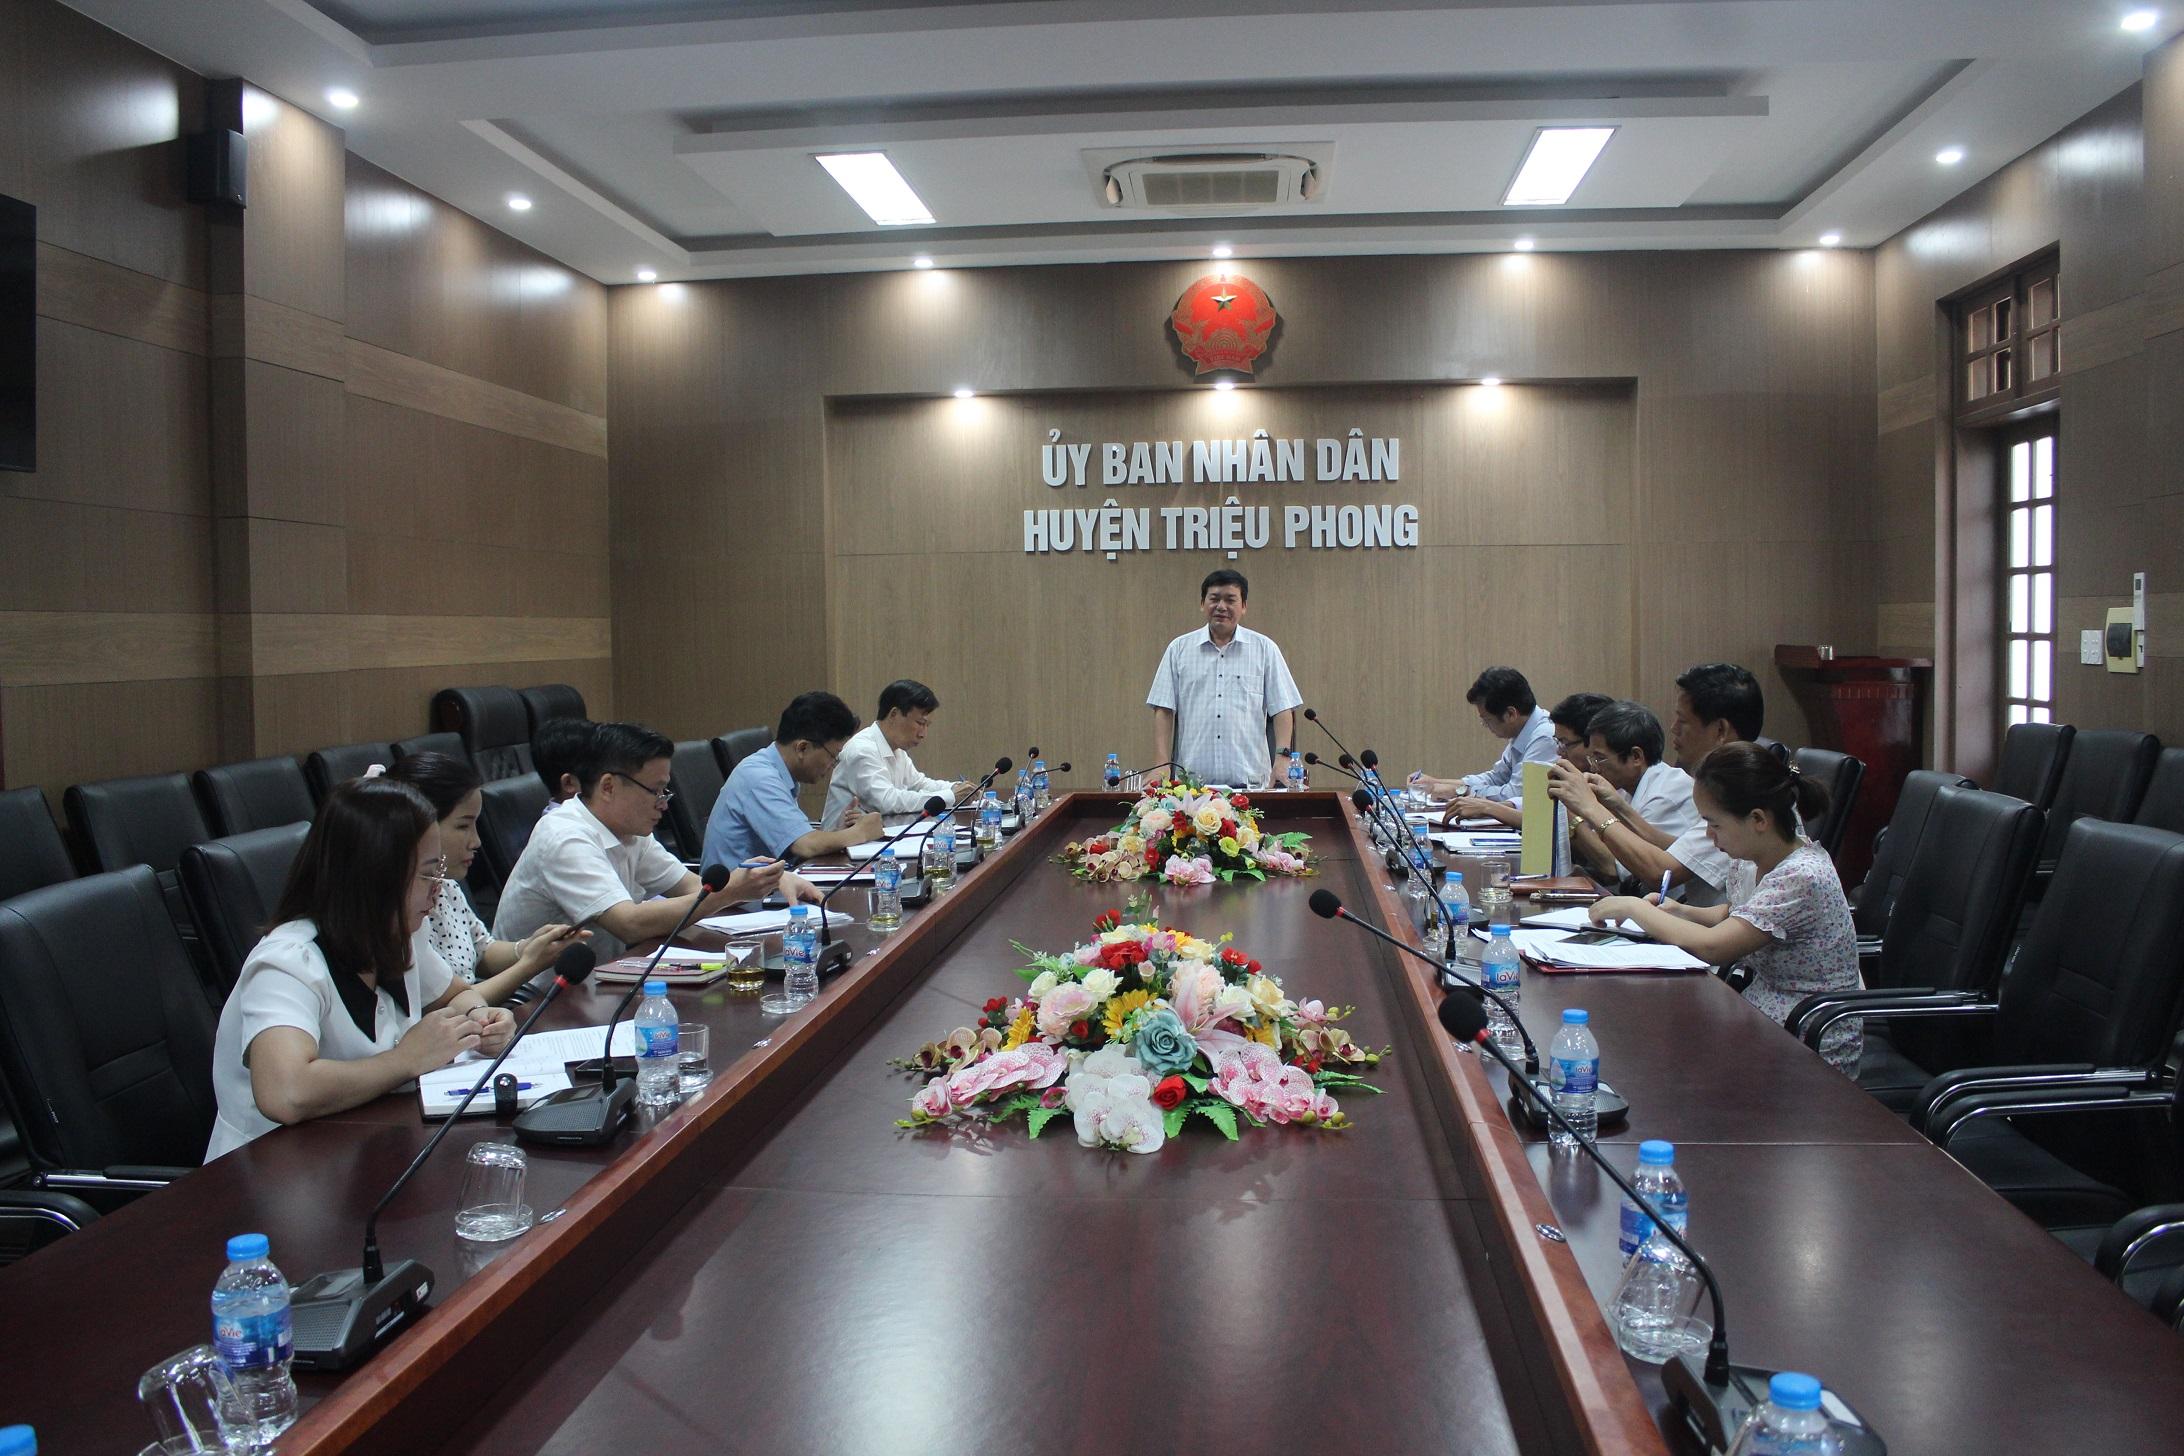 UBND huyện Triệu Phong tổ chức phiên làm việc với Trường...